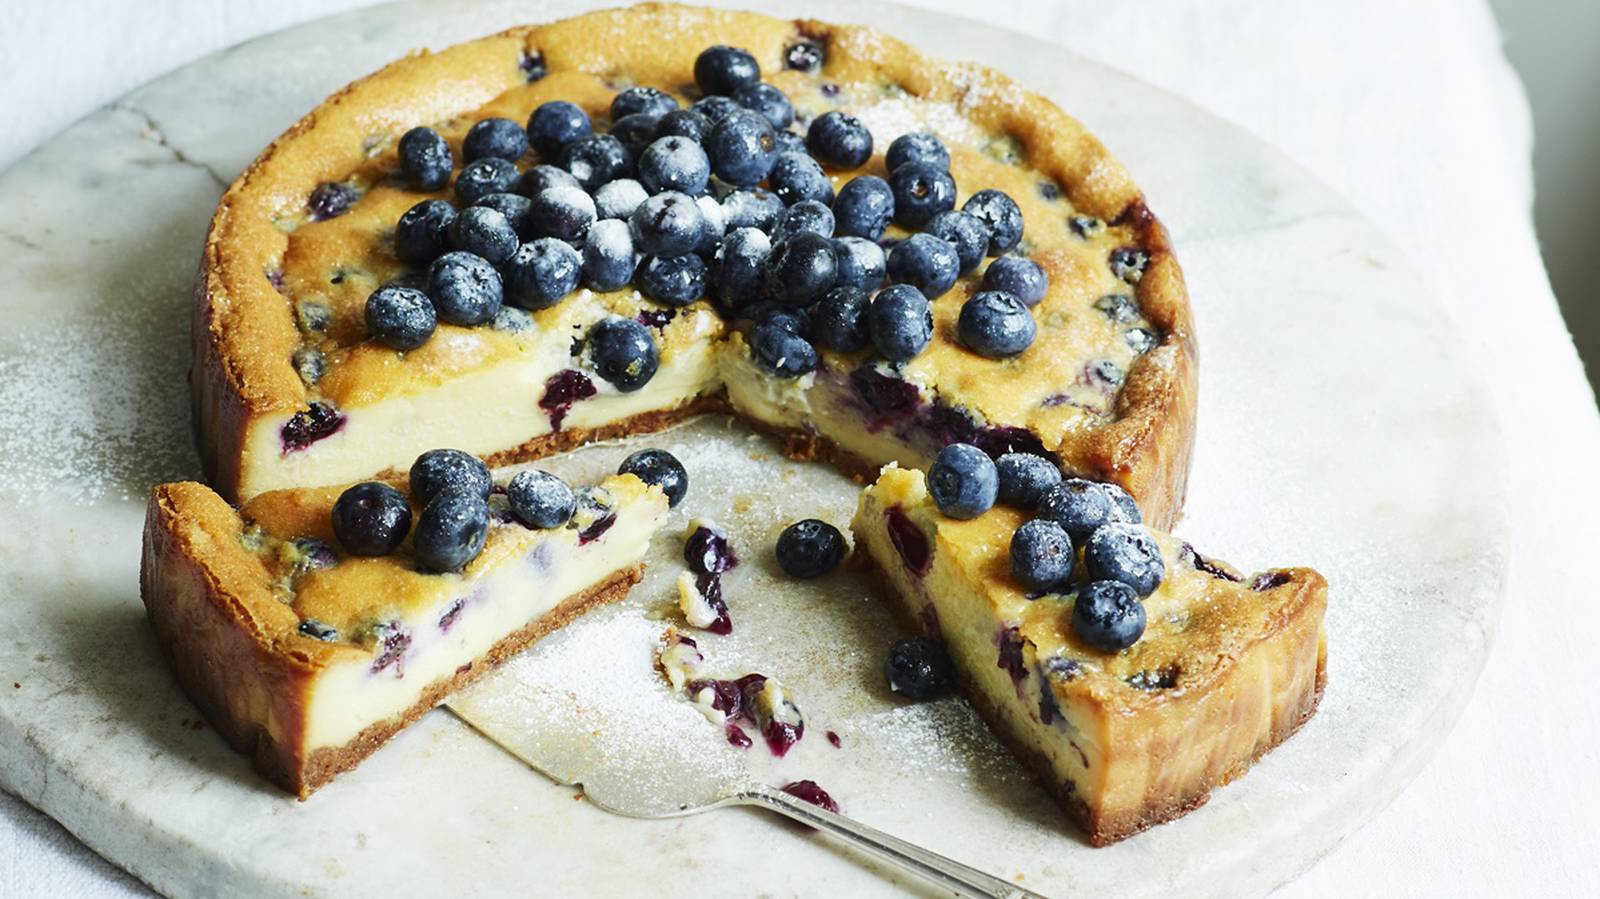 Blueberry and white chocolate cheesecake – The Irish Times